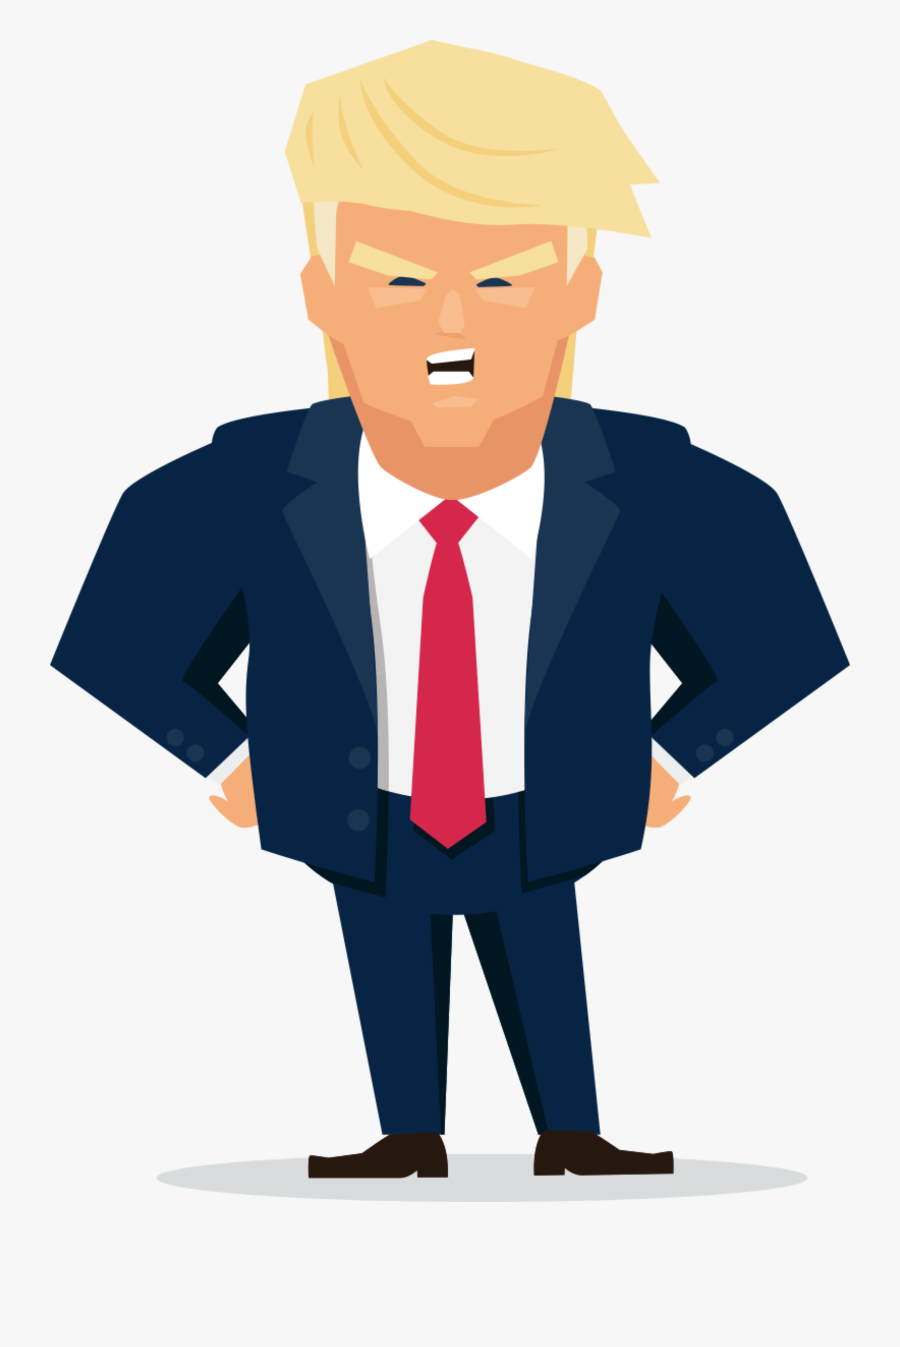 Donald Trump Illustration Clipart , Png Download - Cartoon, Transparent Clipart